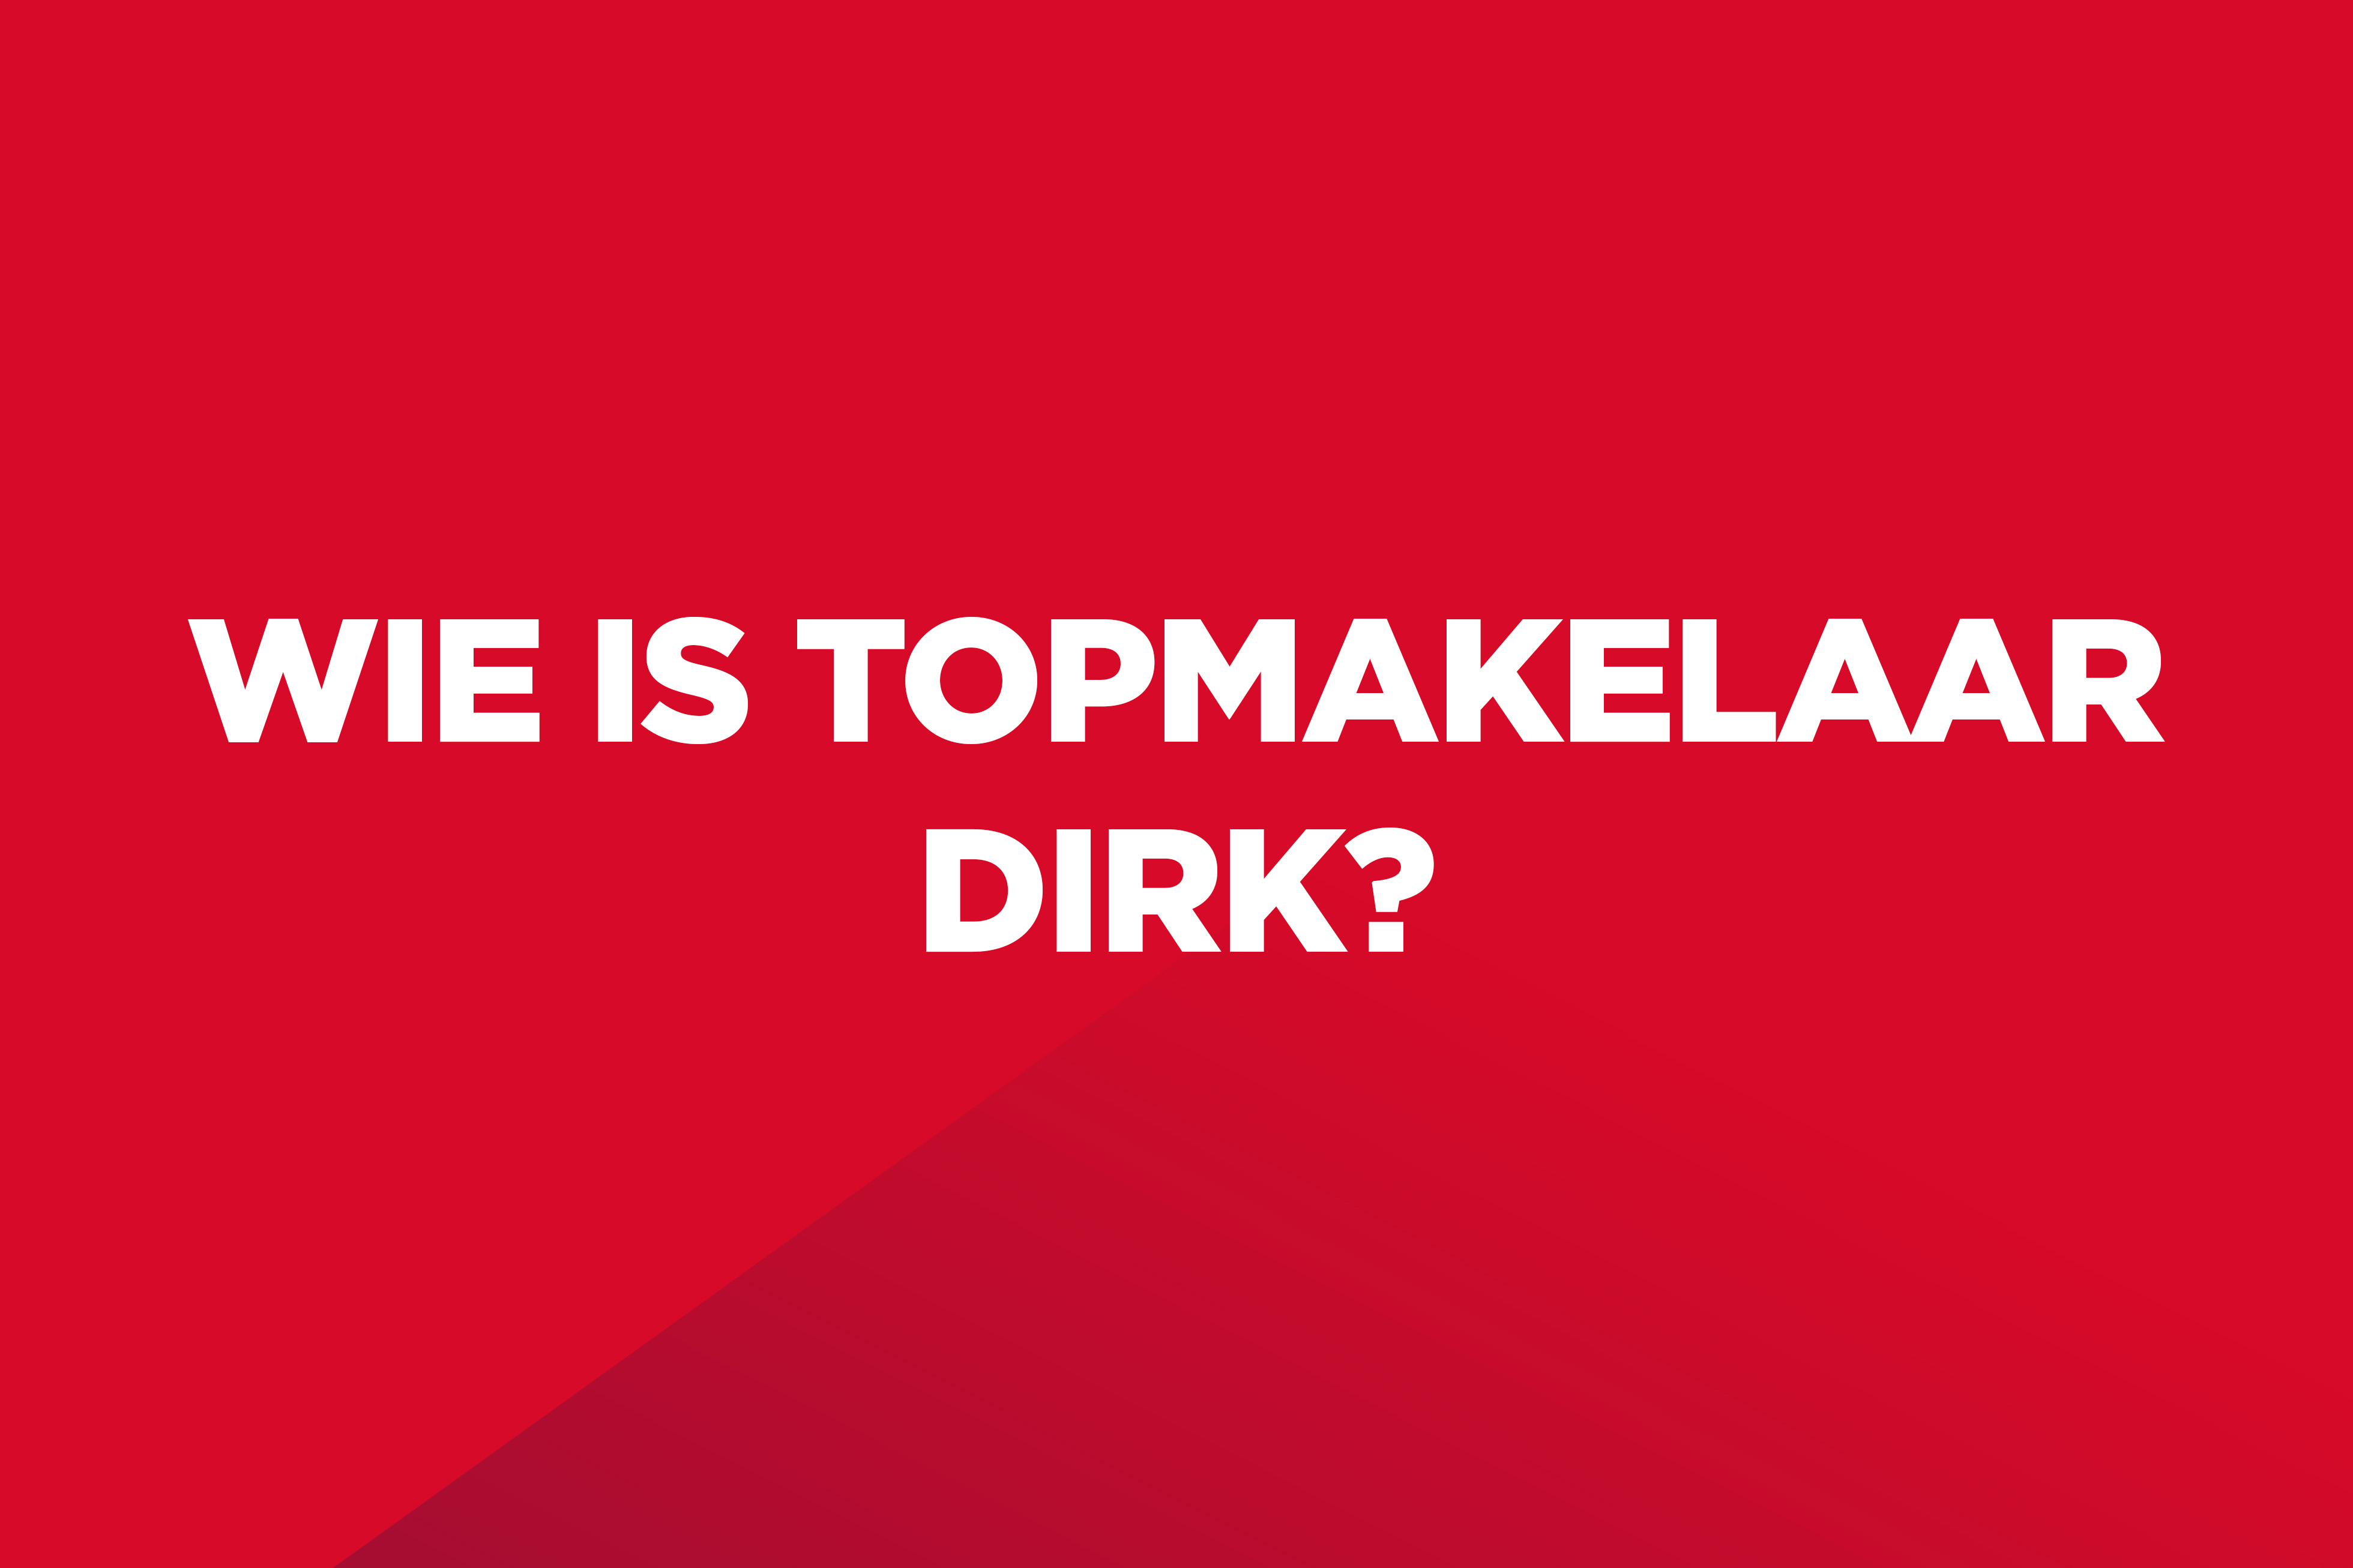 Dit is een rood kleurvlak met witte tekst op: "Wie is Topmakelaar Dirk?".